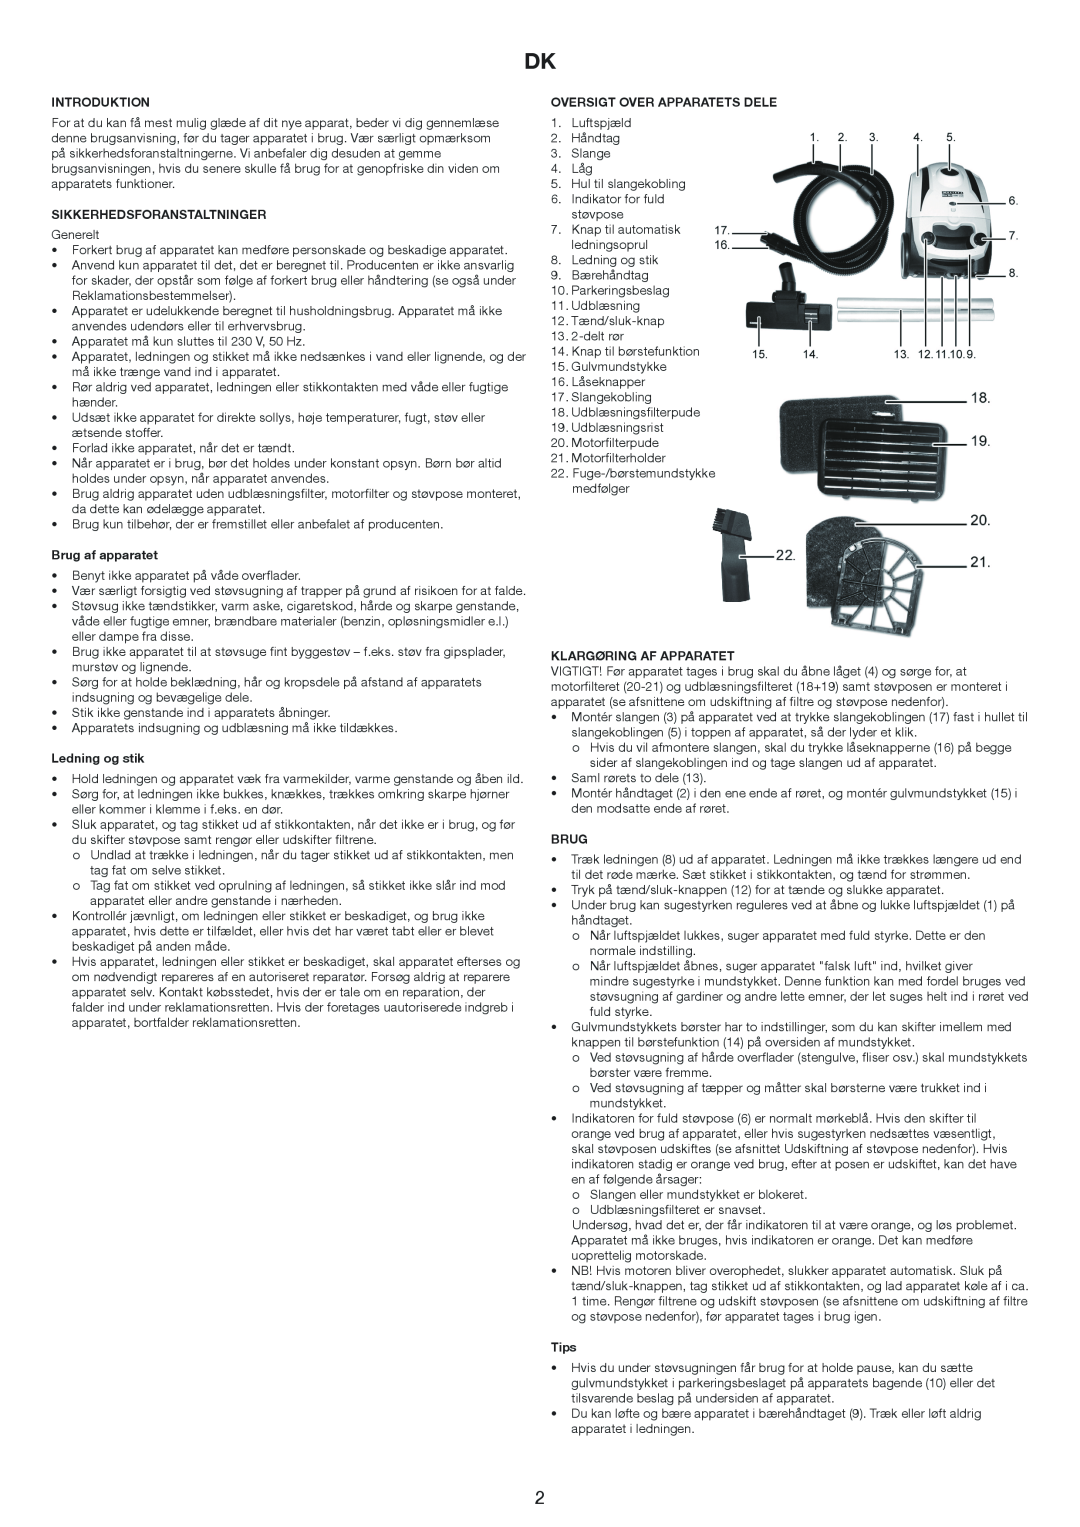 Melissa 640-206 Introduktion, Sikkerhedsforanstaltninger, Brug af apparatet, Ledning og stik, Klargøring Af Apparatet 